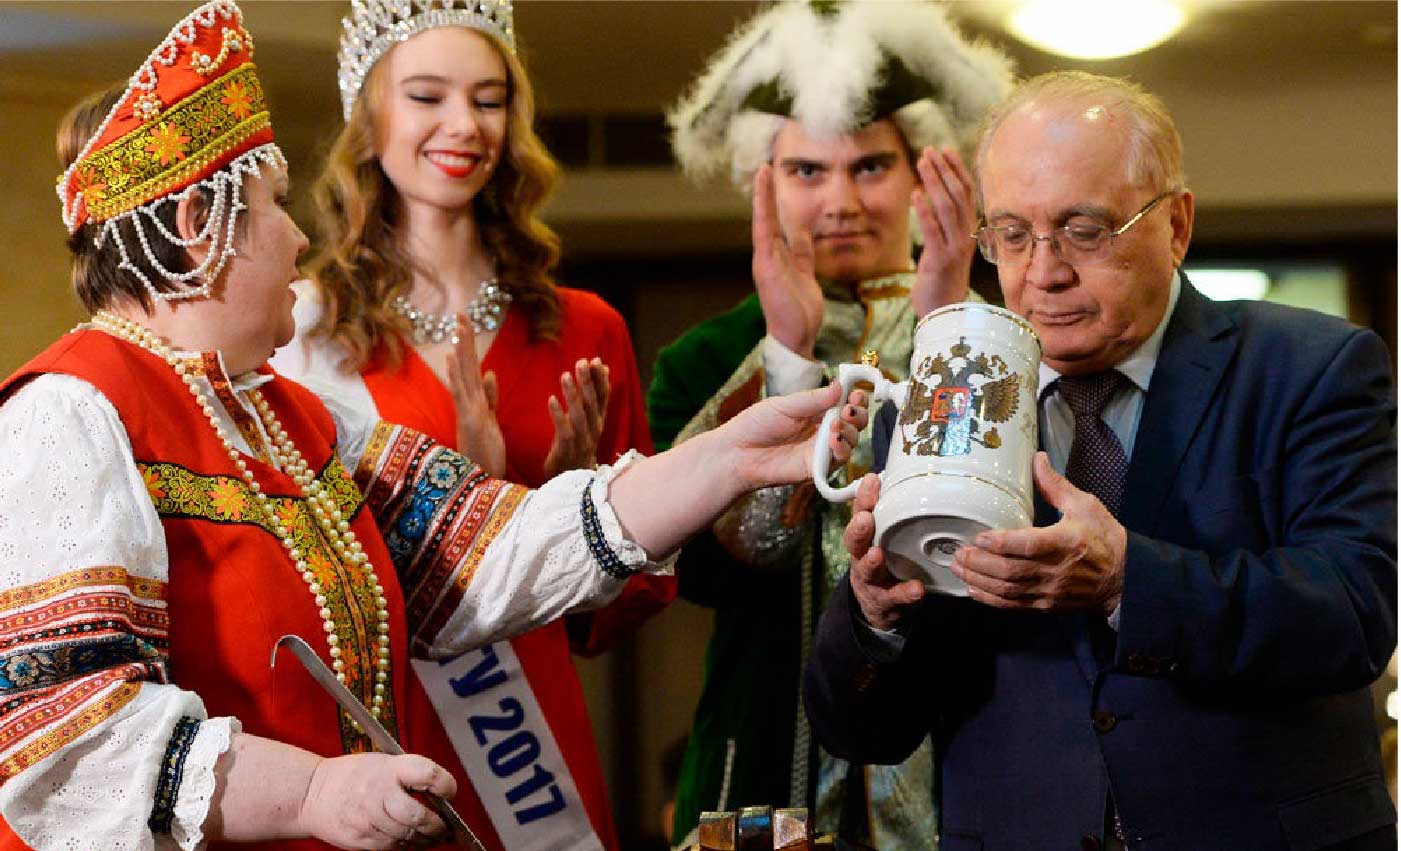 Традицию праздновать Татьянин день медовухой придумал в 1992 году ректор университета Виктор Садовничий. Каждый год 25 января он лично угощает этим напитком студентов.